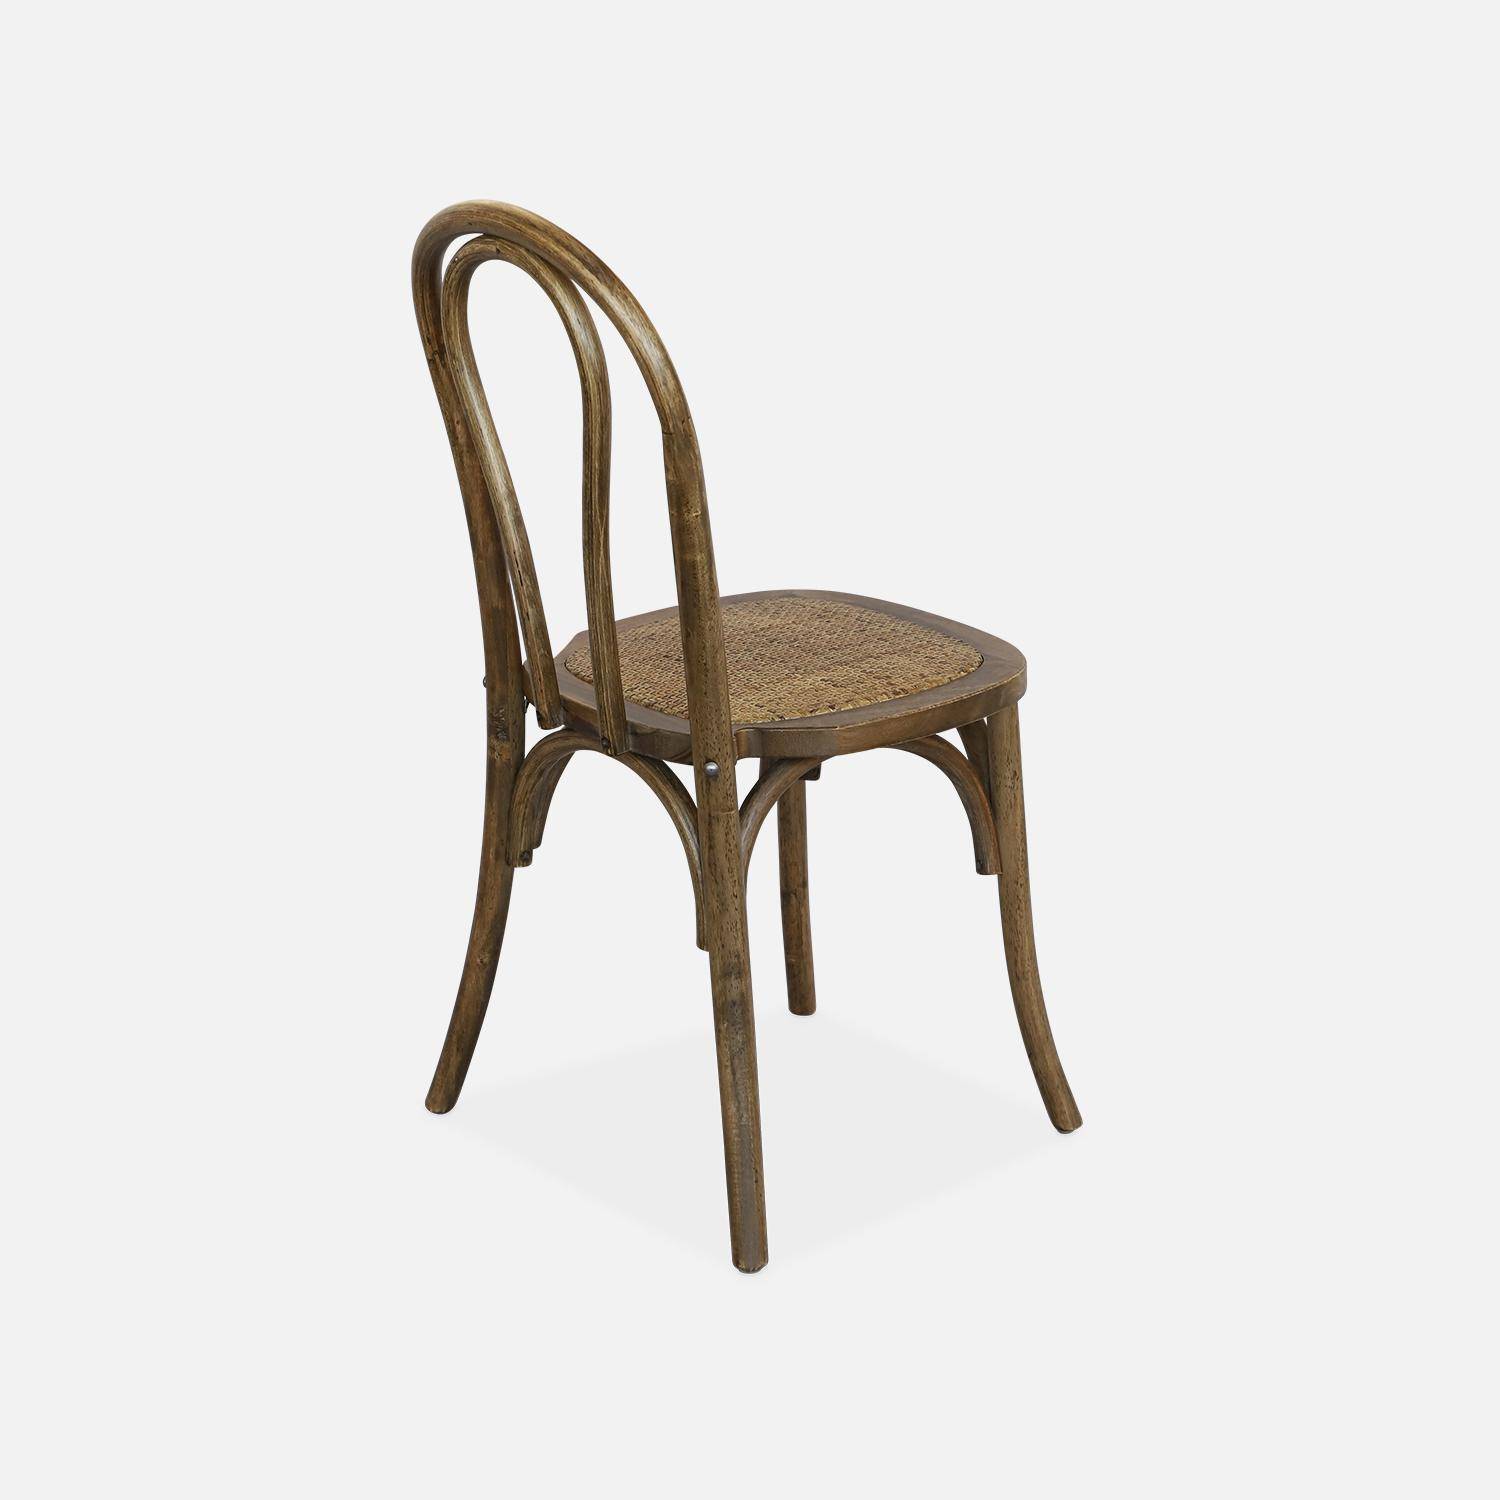 Juego de dos sillas vintage de madera con asiento de ratán y respaldo redondeado en marrón antiguo Photo3